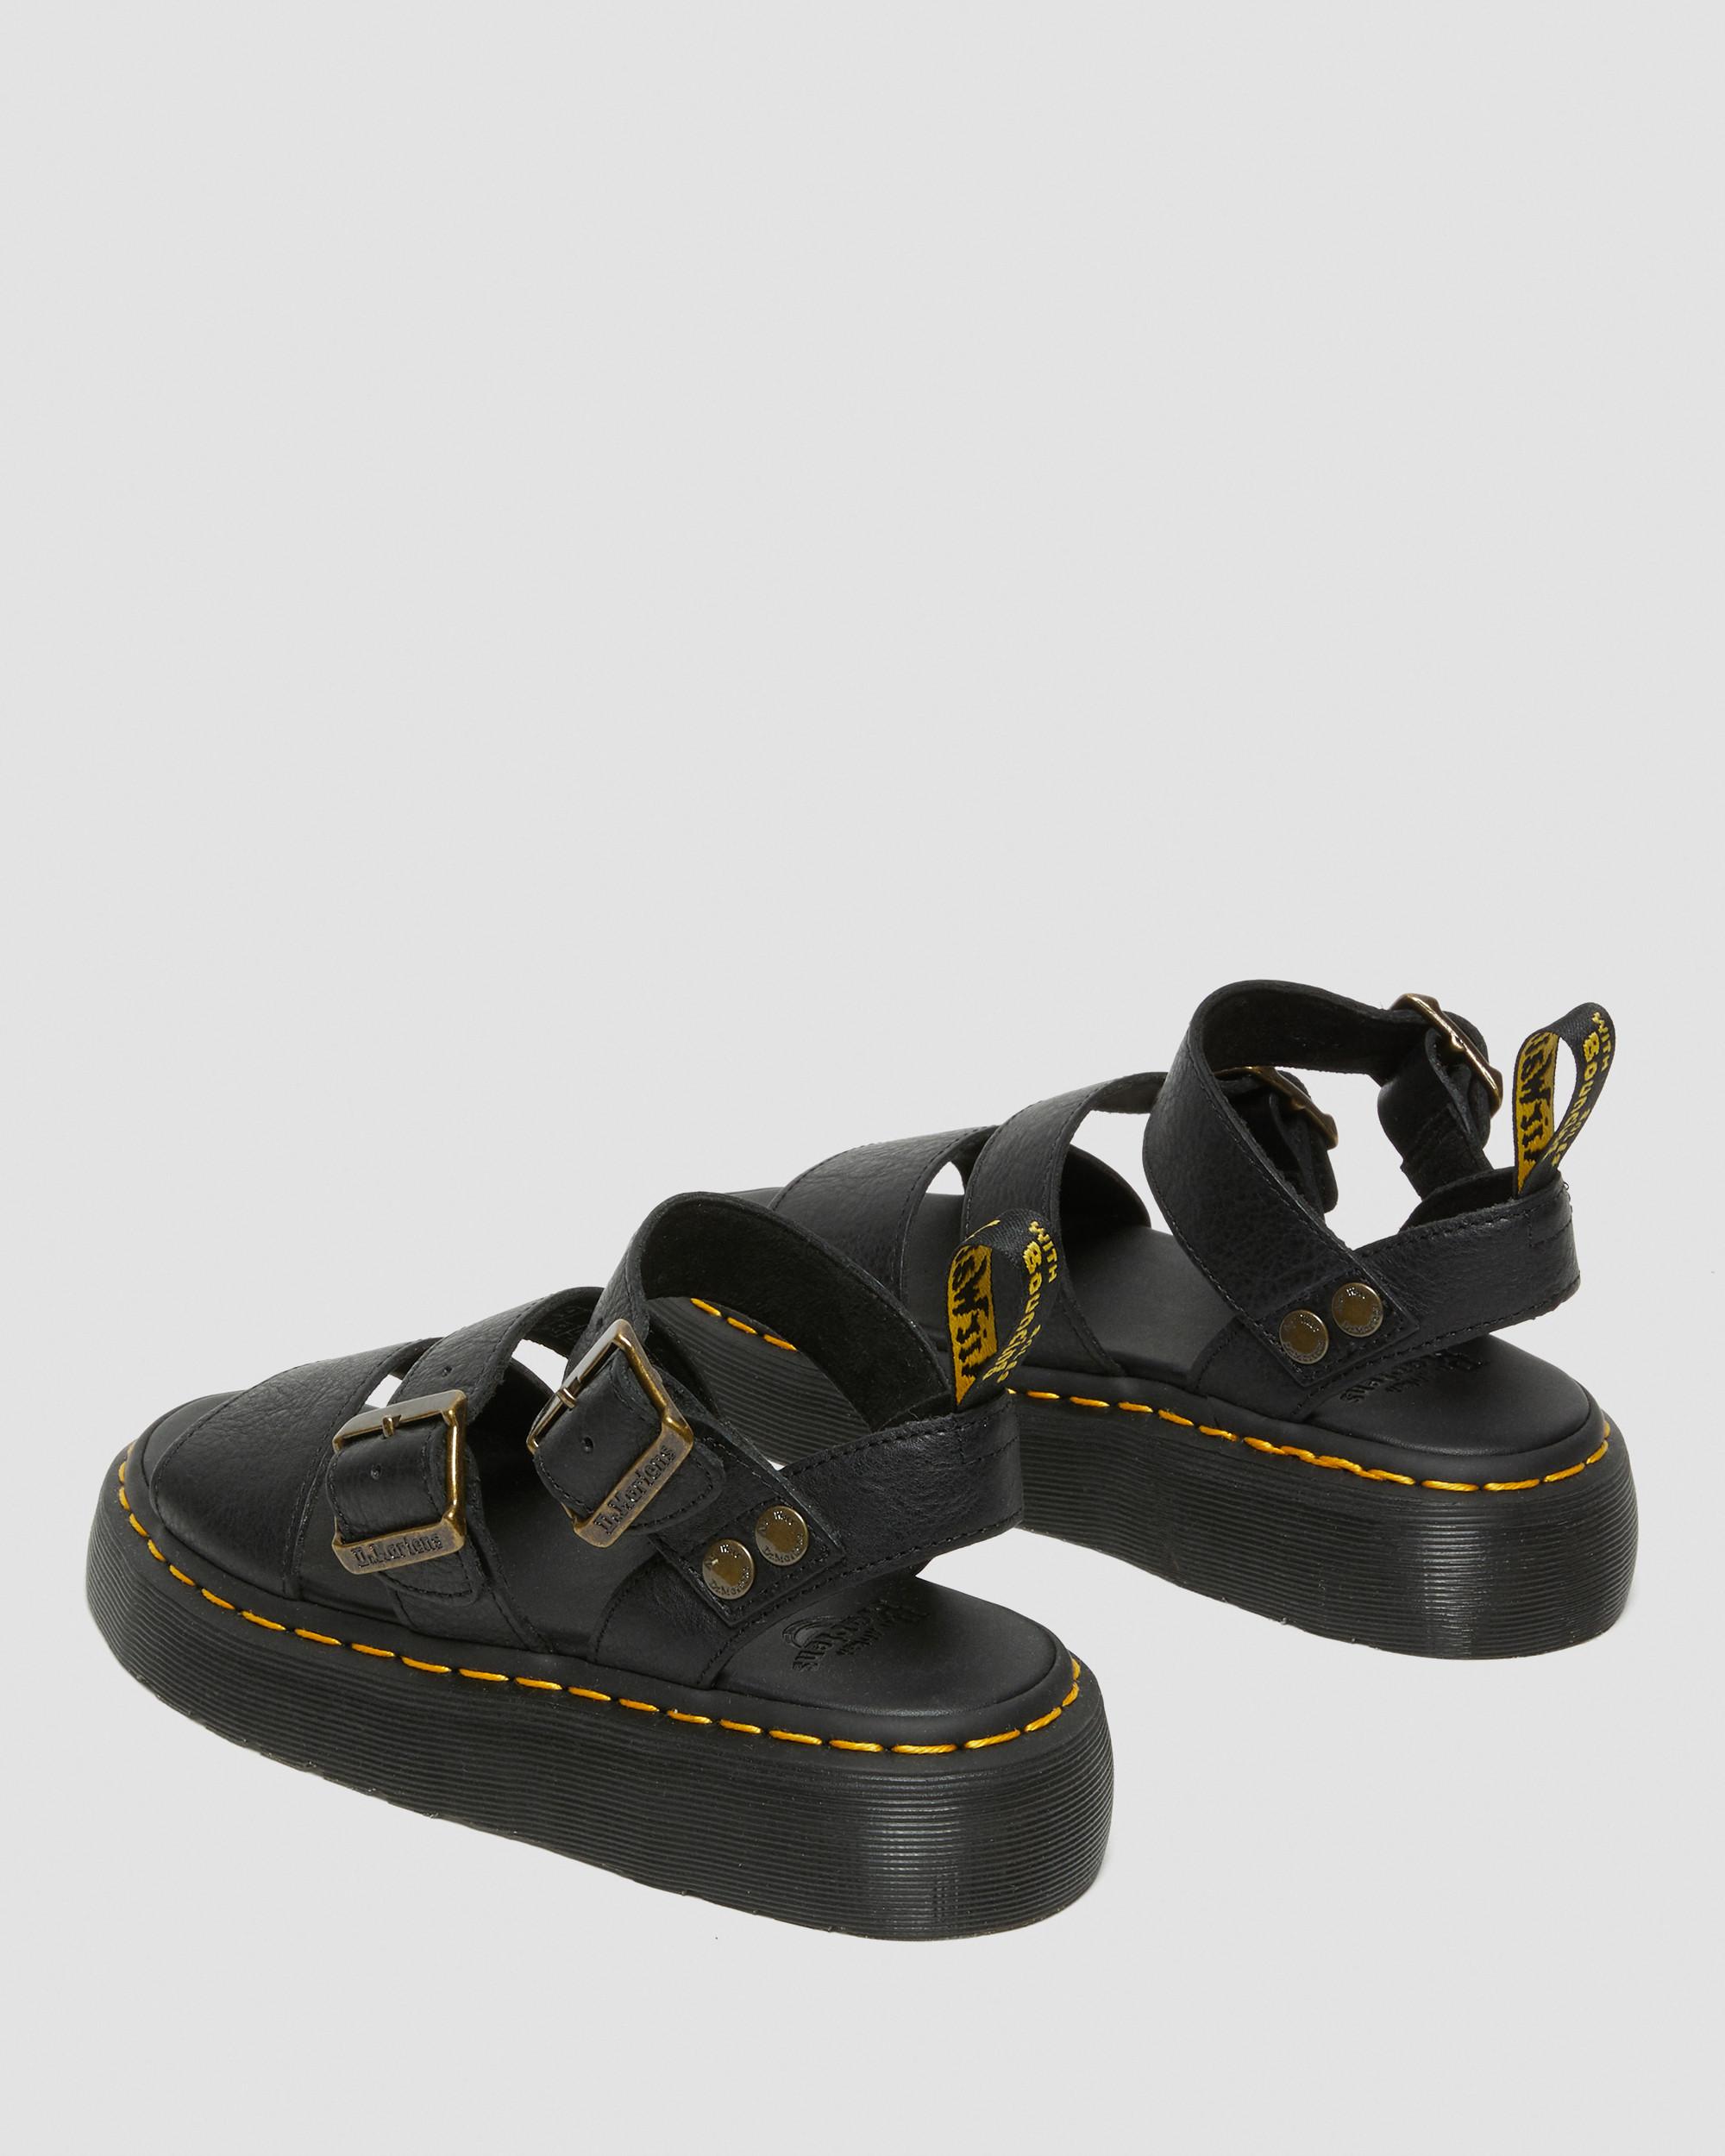 DR MARTENS Gryphon Pisa Leather Platform Sandals